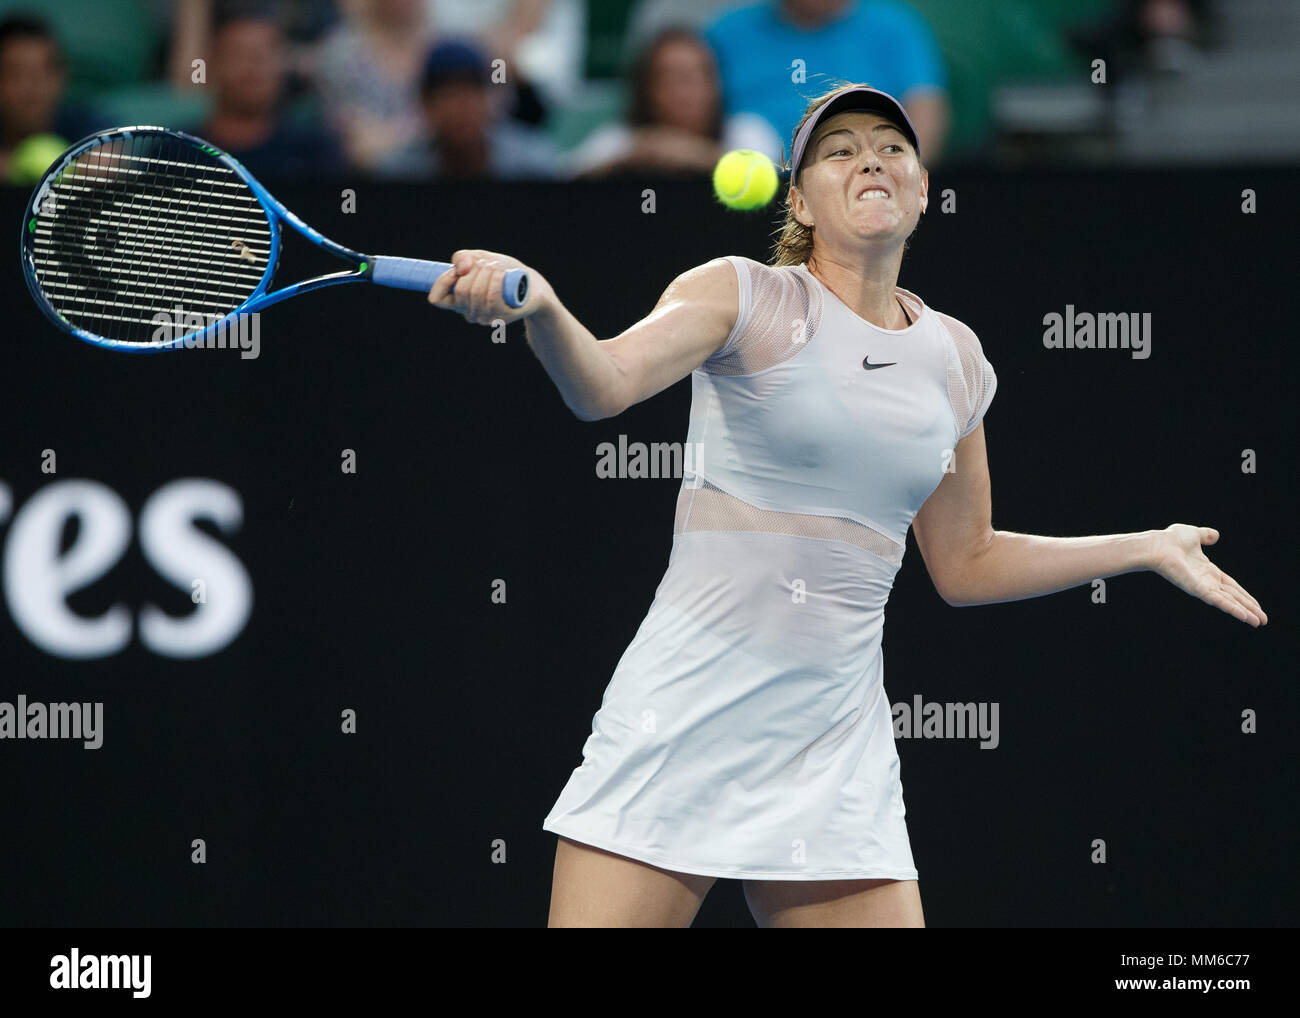 La joueuse de tennis russe Maria Sharapova jouant forehand tourné en Australie en 2018, le tournoi de tennis de Melbourne Park, Melbourne, Victoria, Australie Banque D'Images